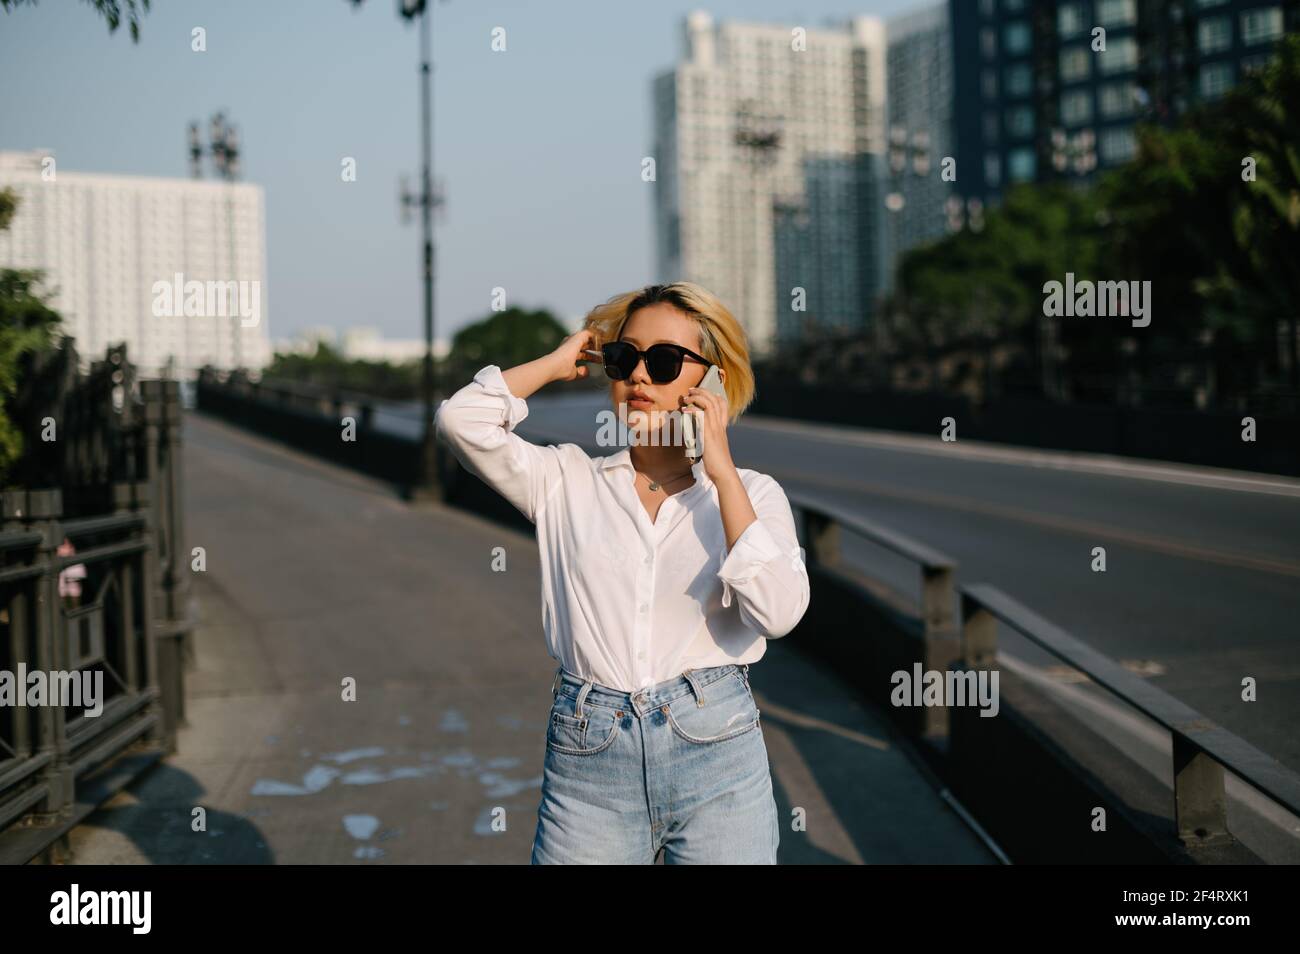 Une jeune femme asiatique avec des lunettes de soleil debout dans la rue parlant sur son téléphone, avec la route et les bâtiments à l'arrière-plan. Banque D'Images